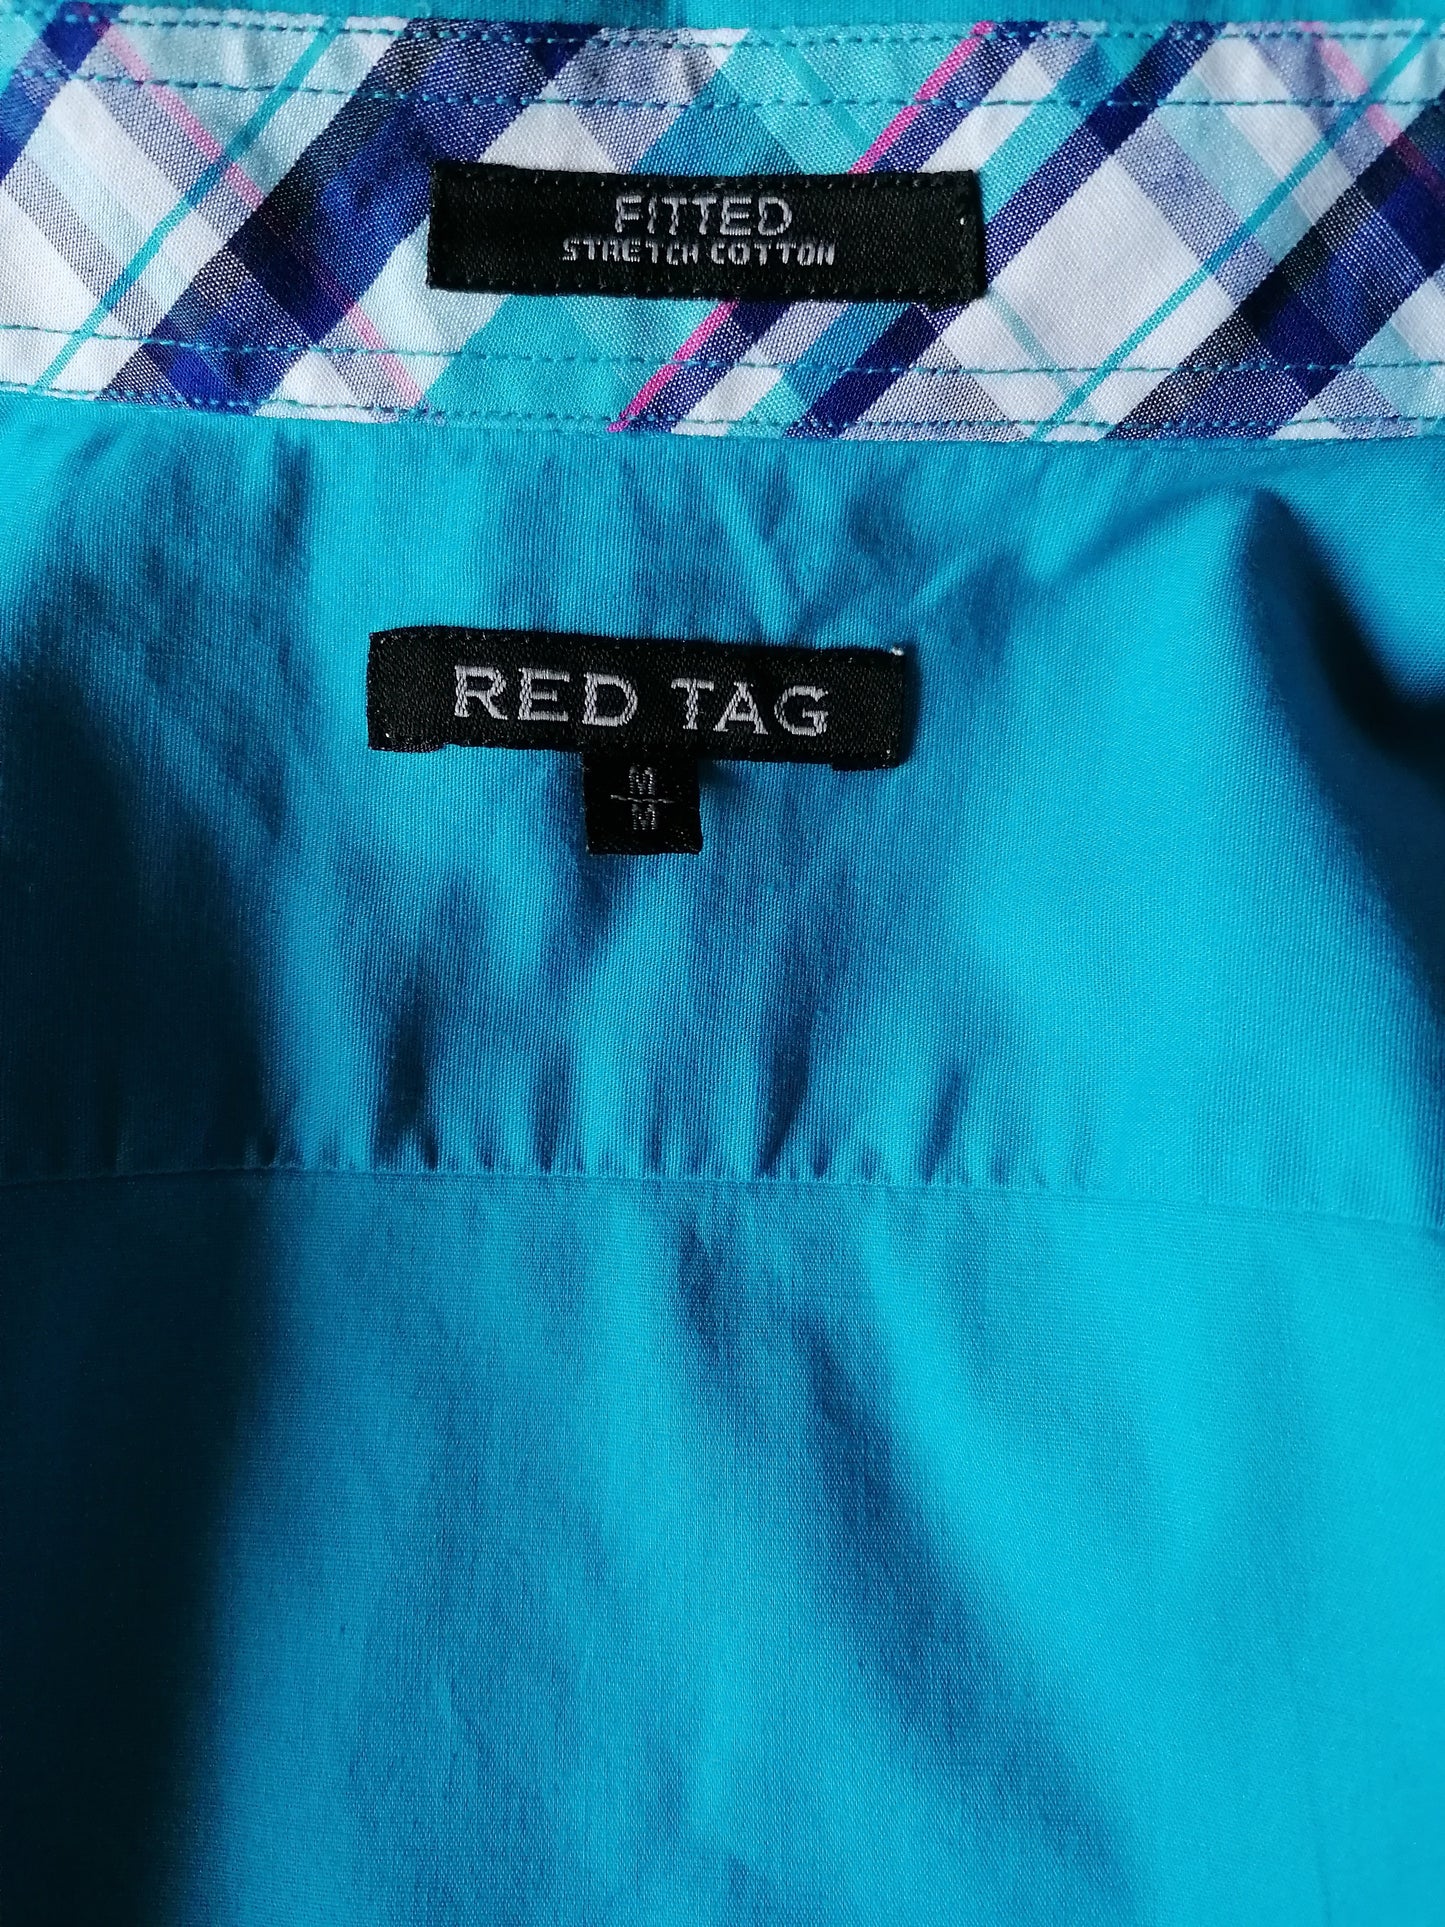 Camicia rossa. Blu colorato. Taglia M. Stretch